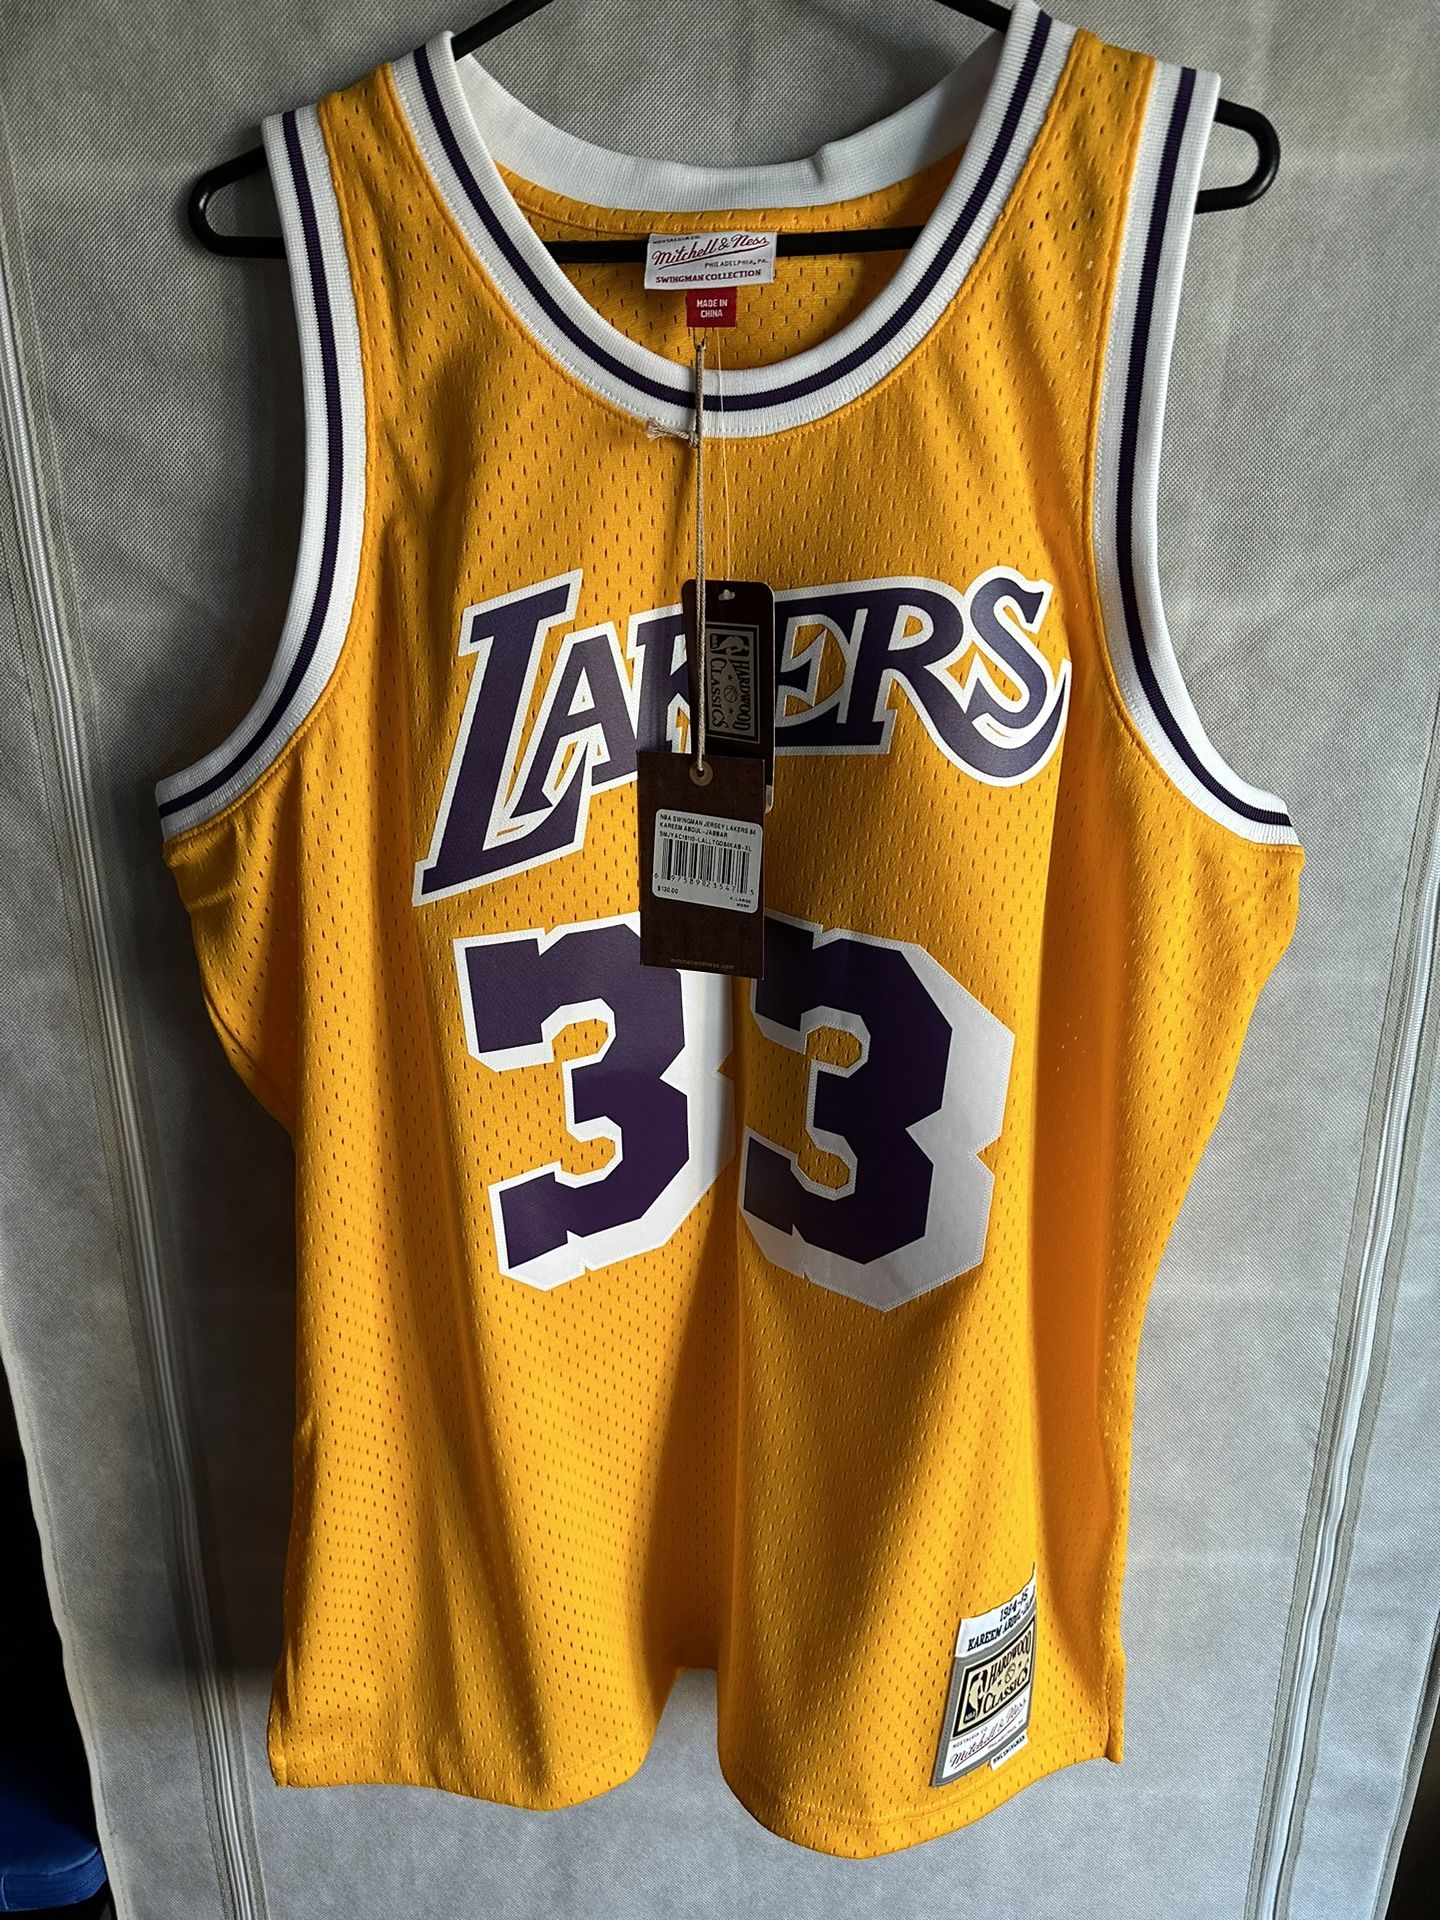 Kareem Abdul-Jabbar NBA Fan Jerseys for sale